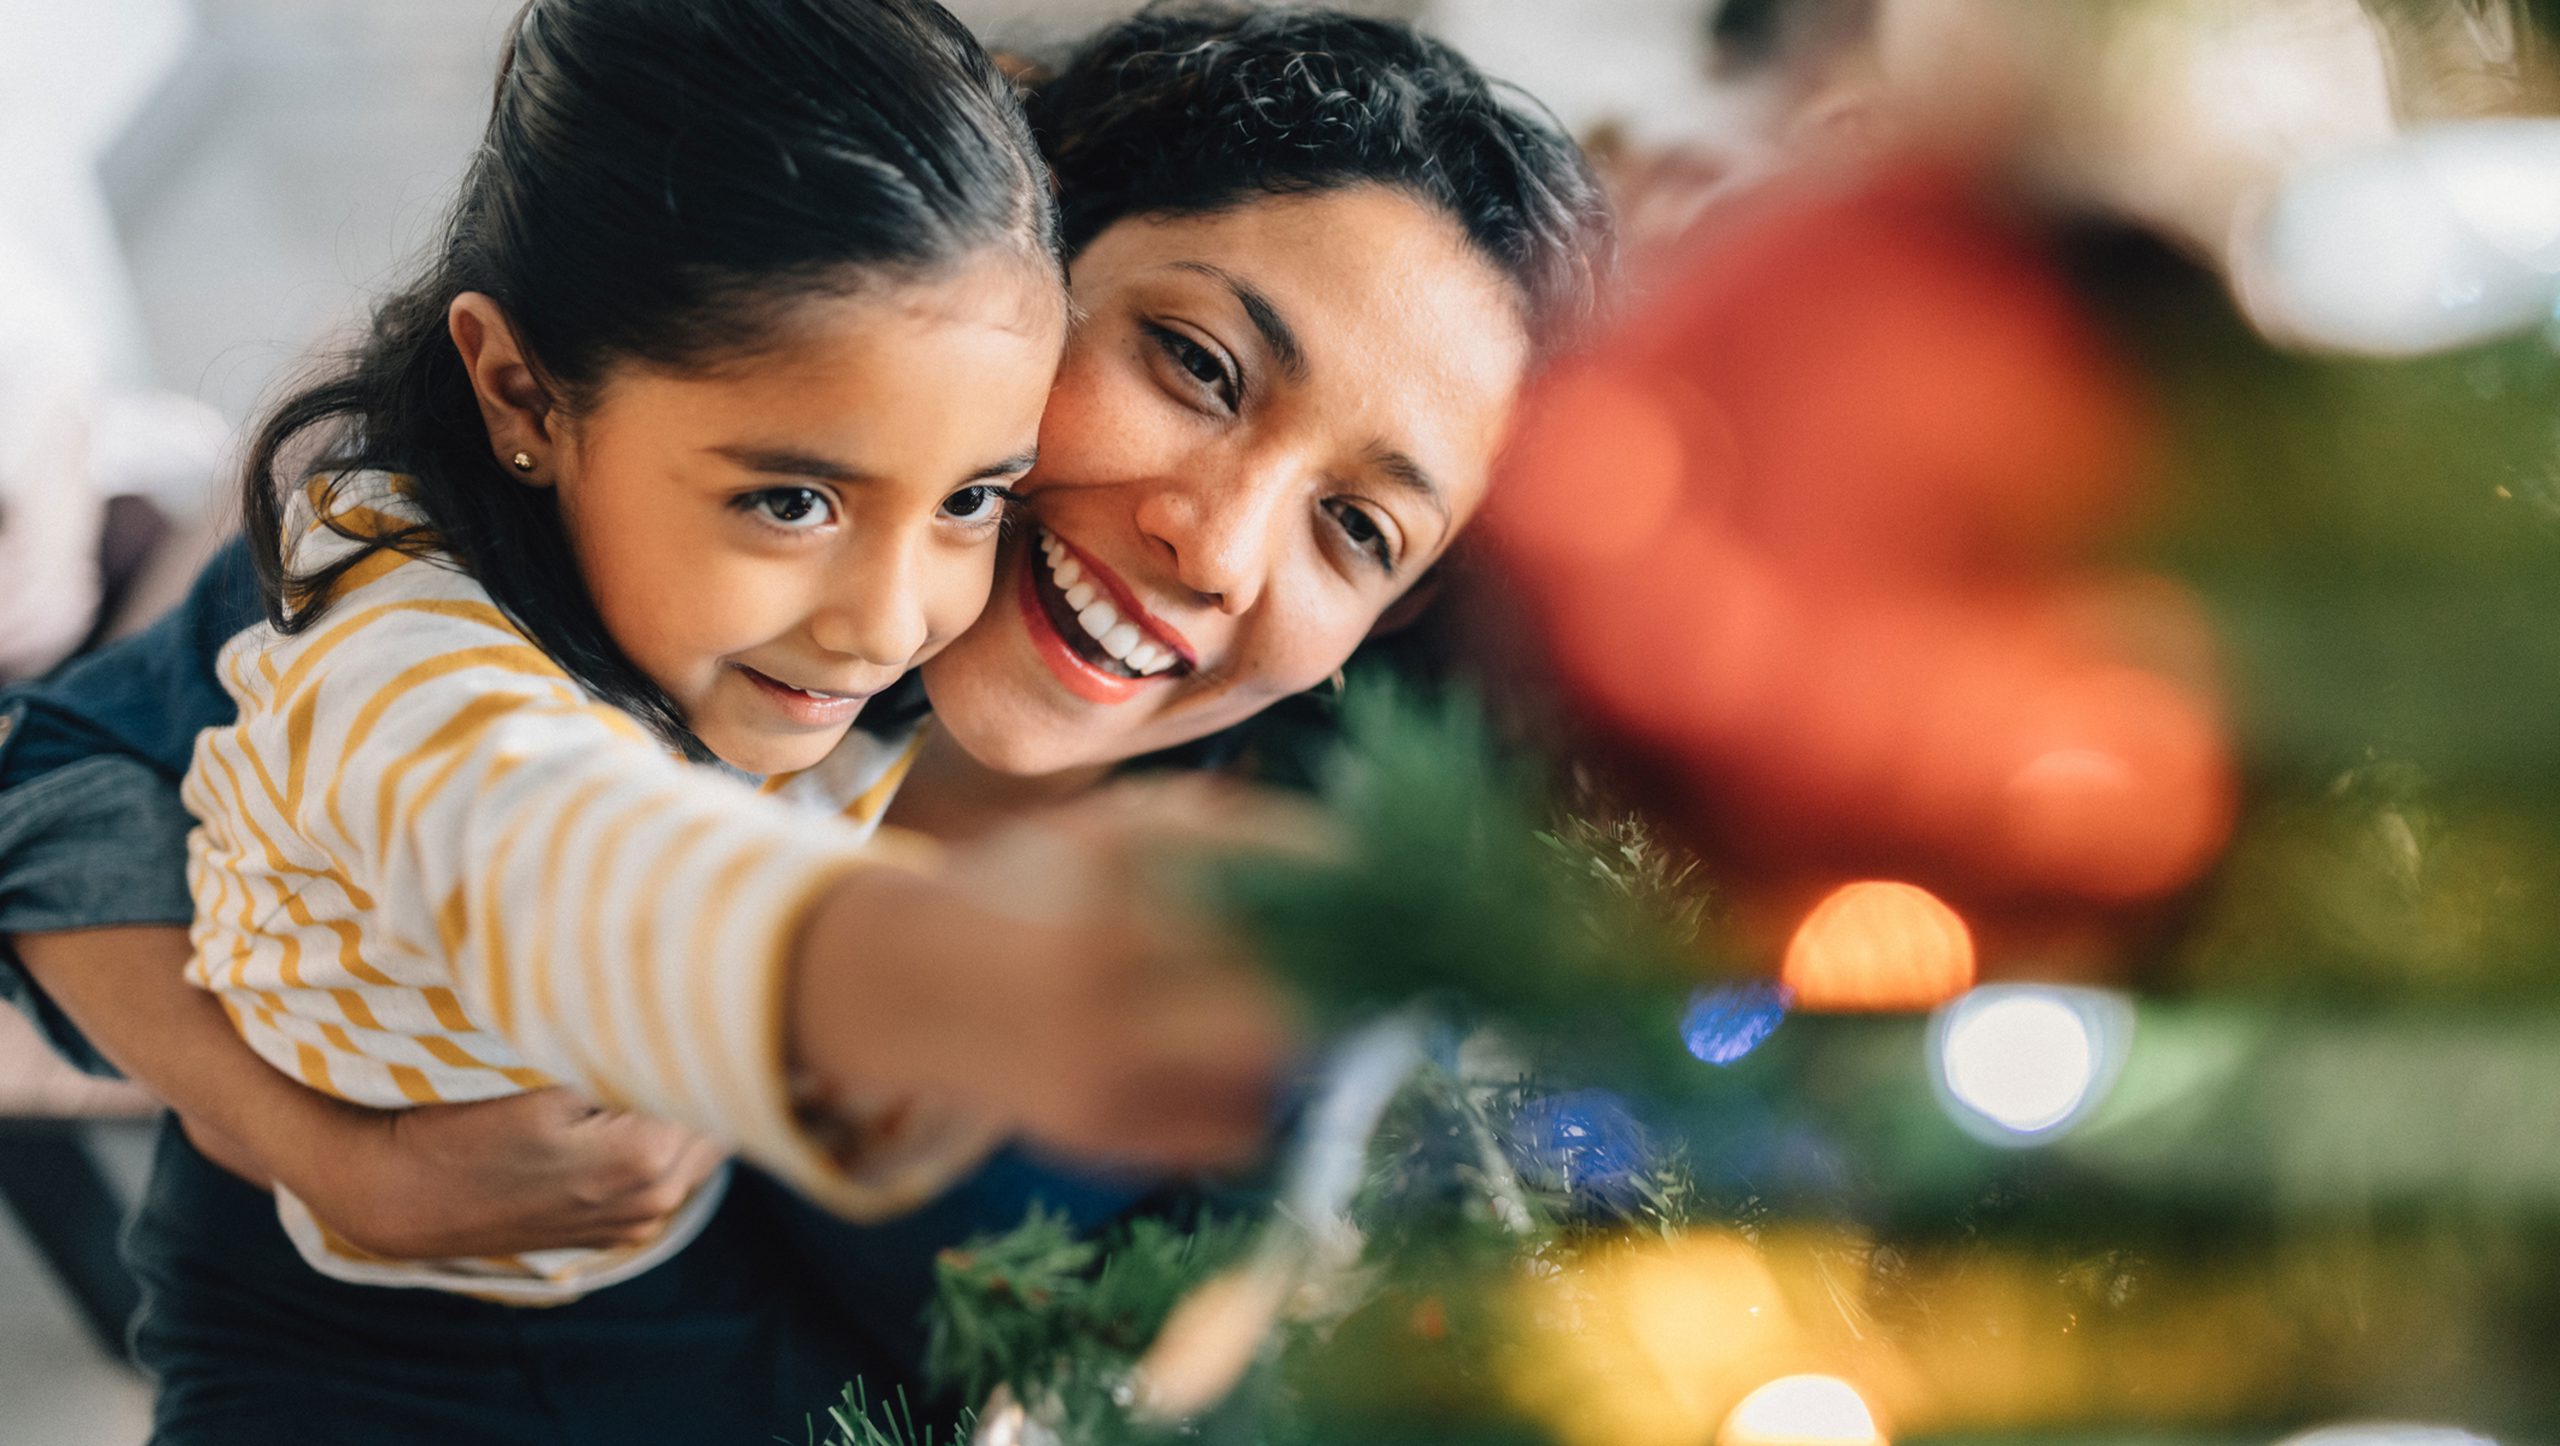 El verdadero sentido de la Navidad – Compartir en familia